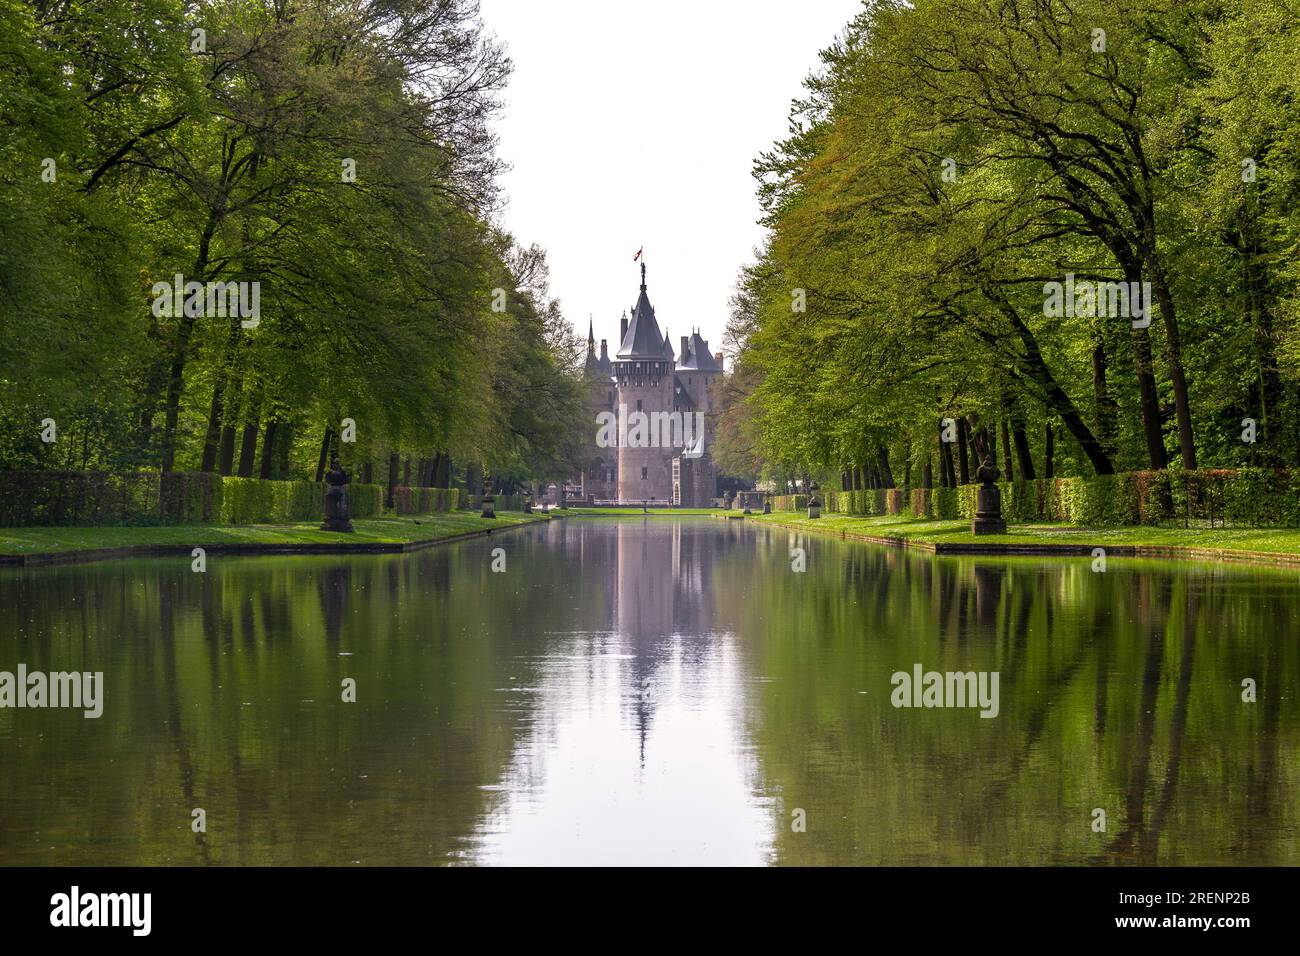 HAARZUILIENS, PAYS-BAS - 6 MAI 2013 : il s'agit d'un parc avec un étang artificiel au château de Haar. Banque D'Images